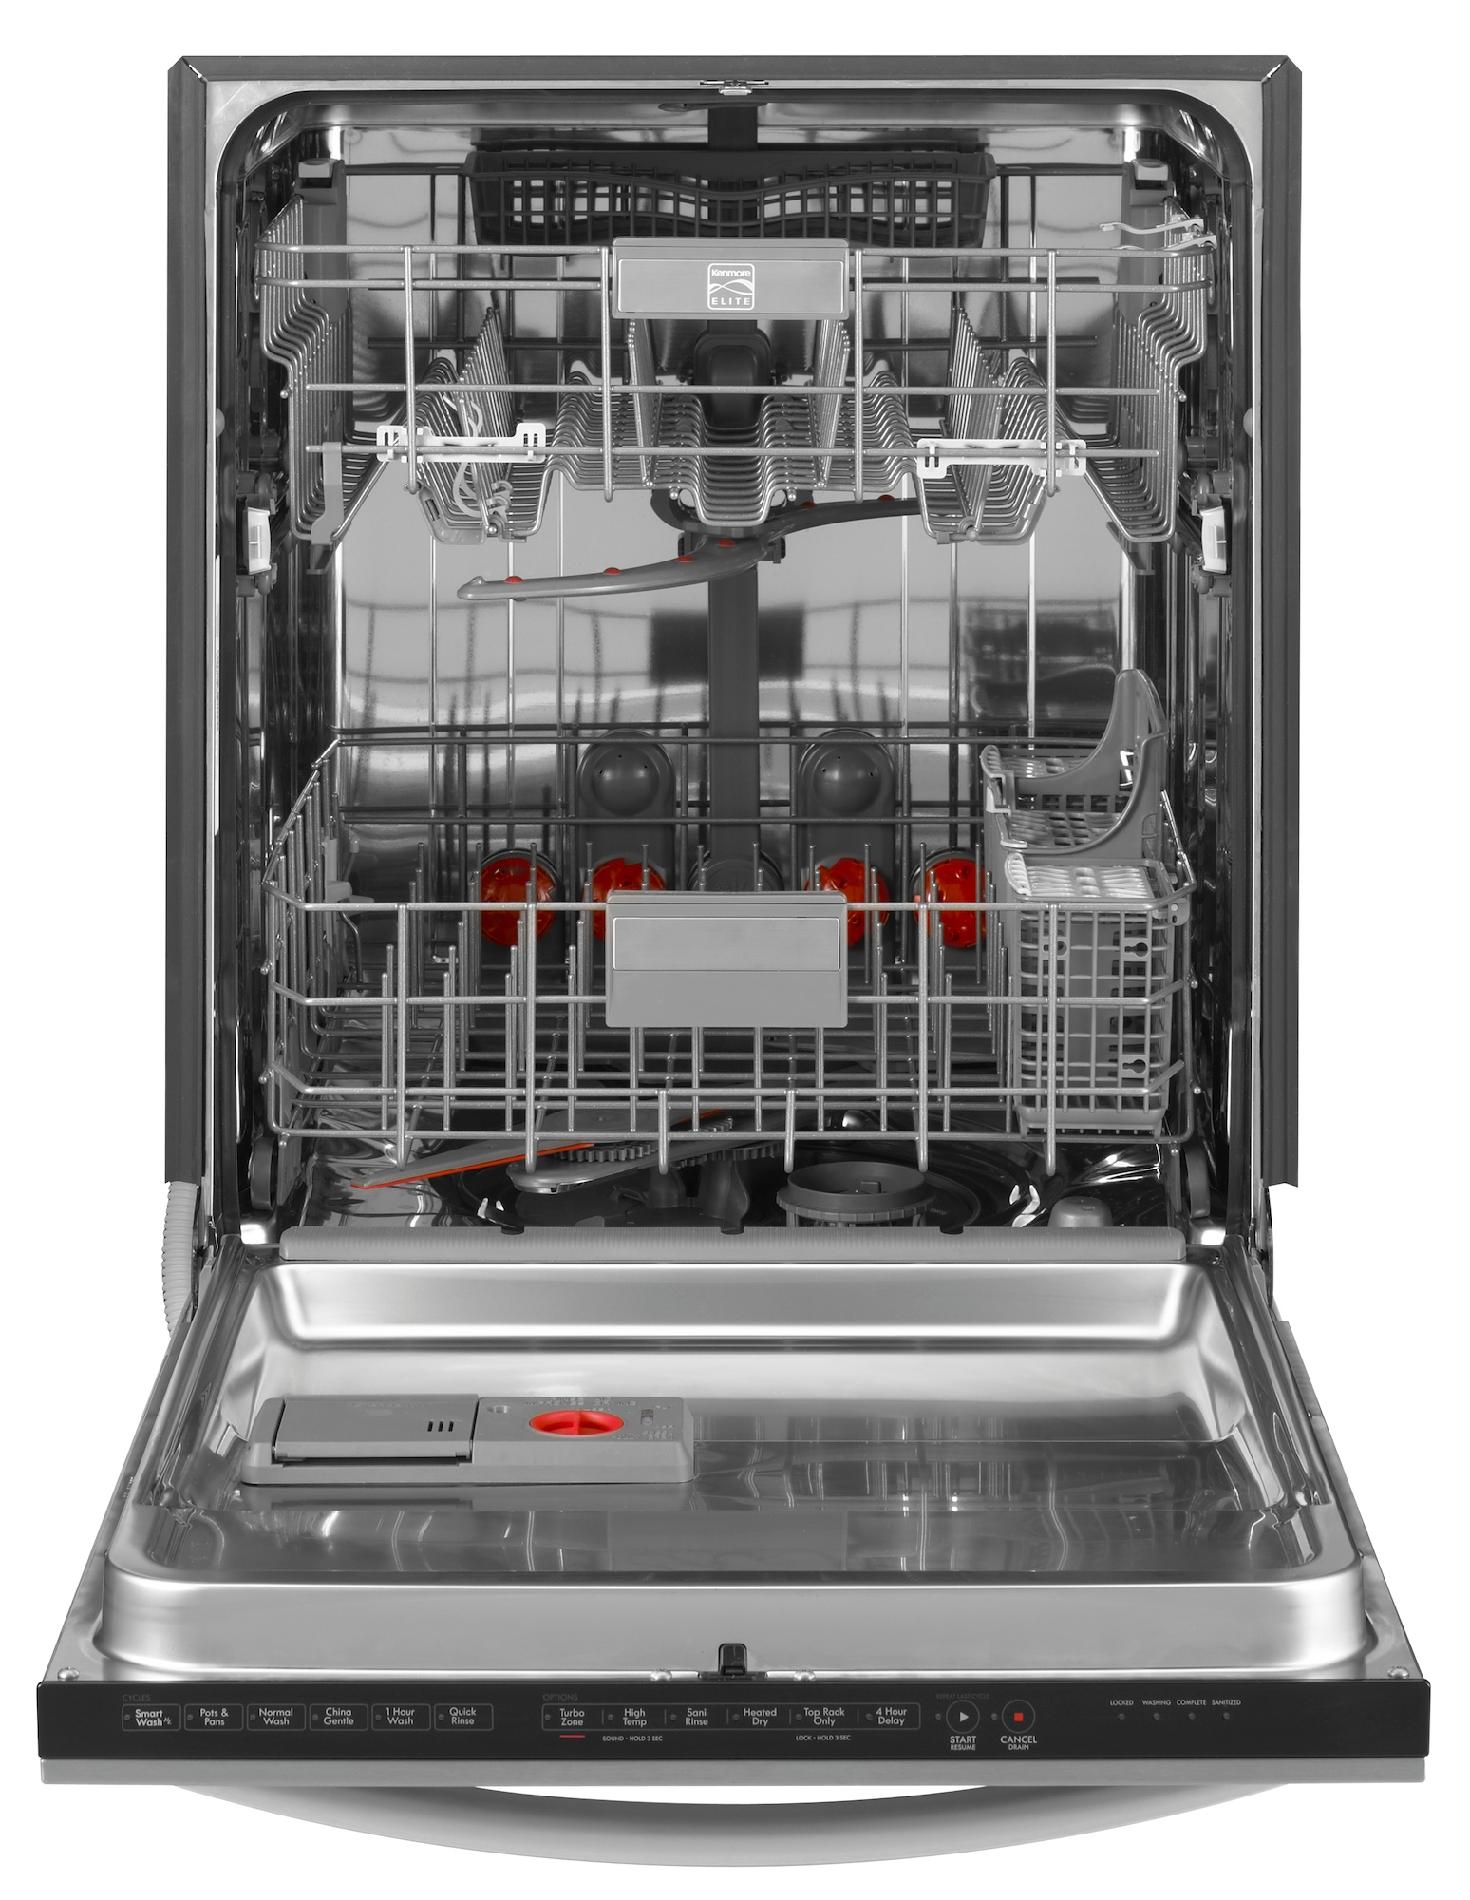 sears dishwasher sale